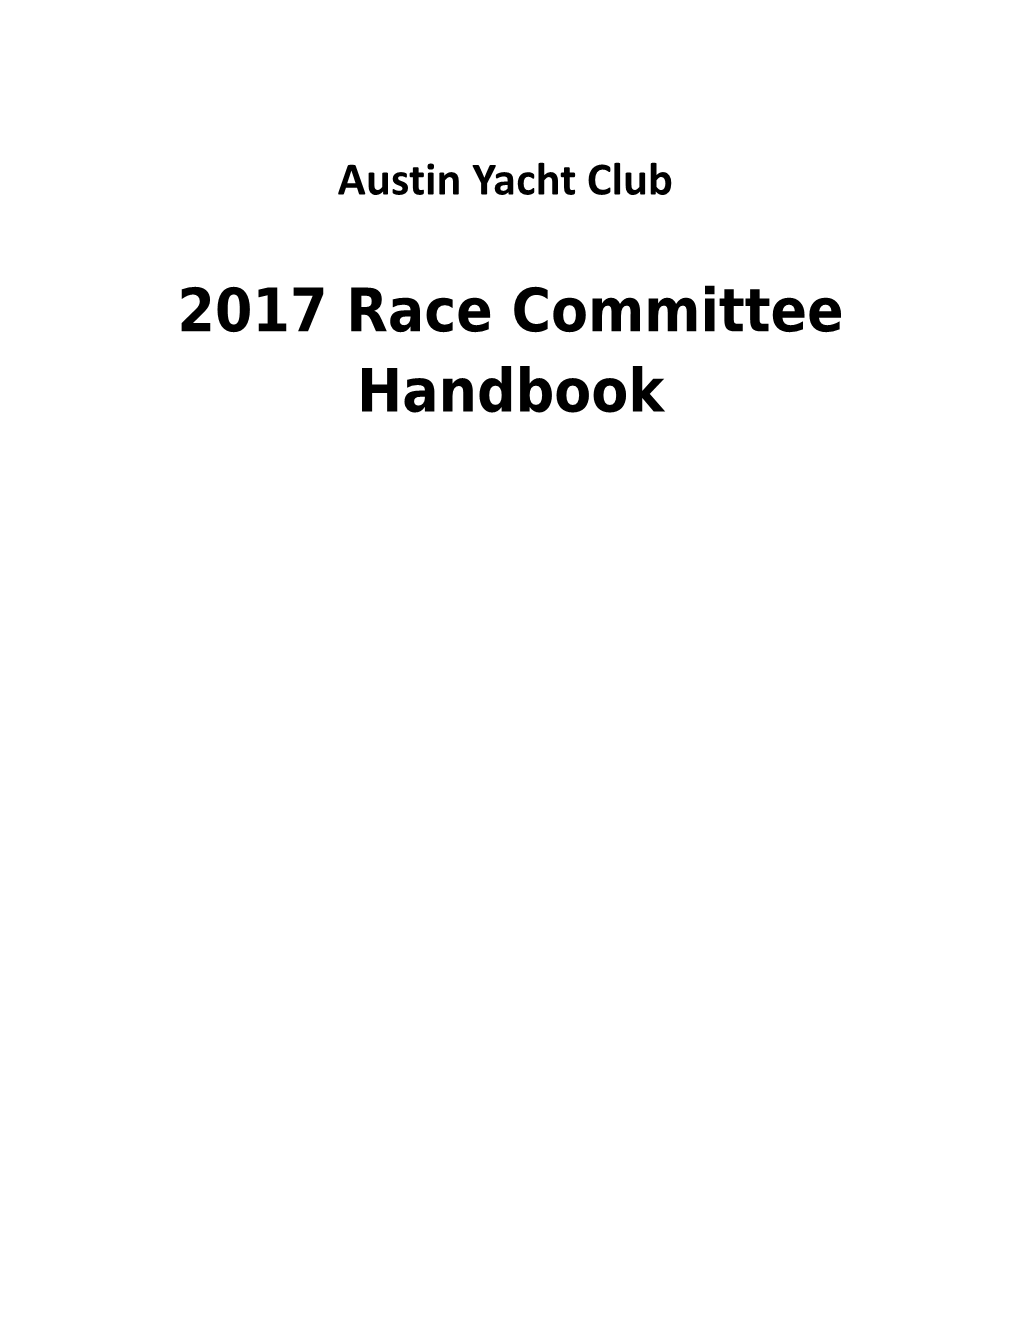 2011 Race Committee Handbook